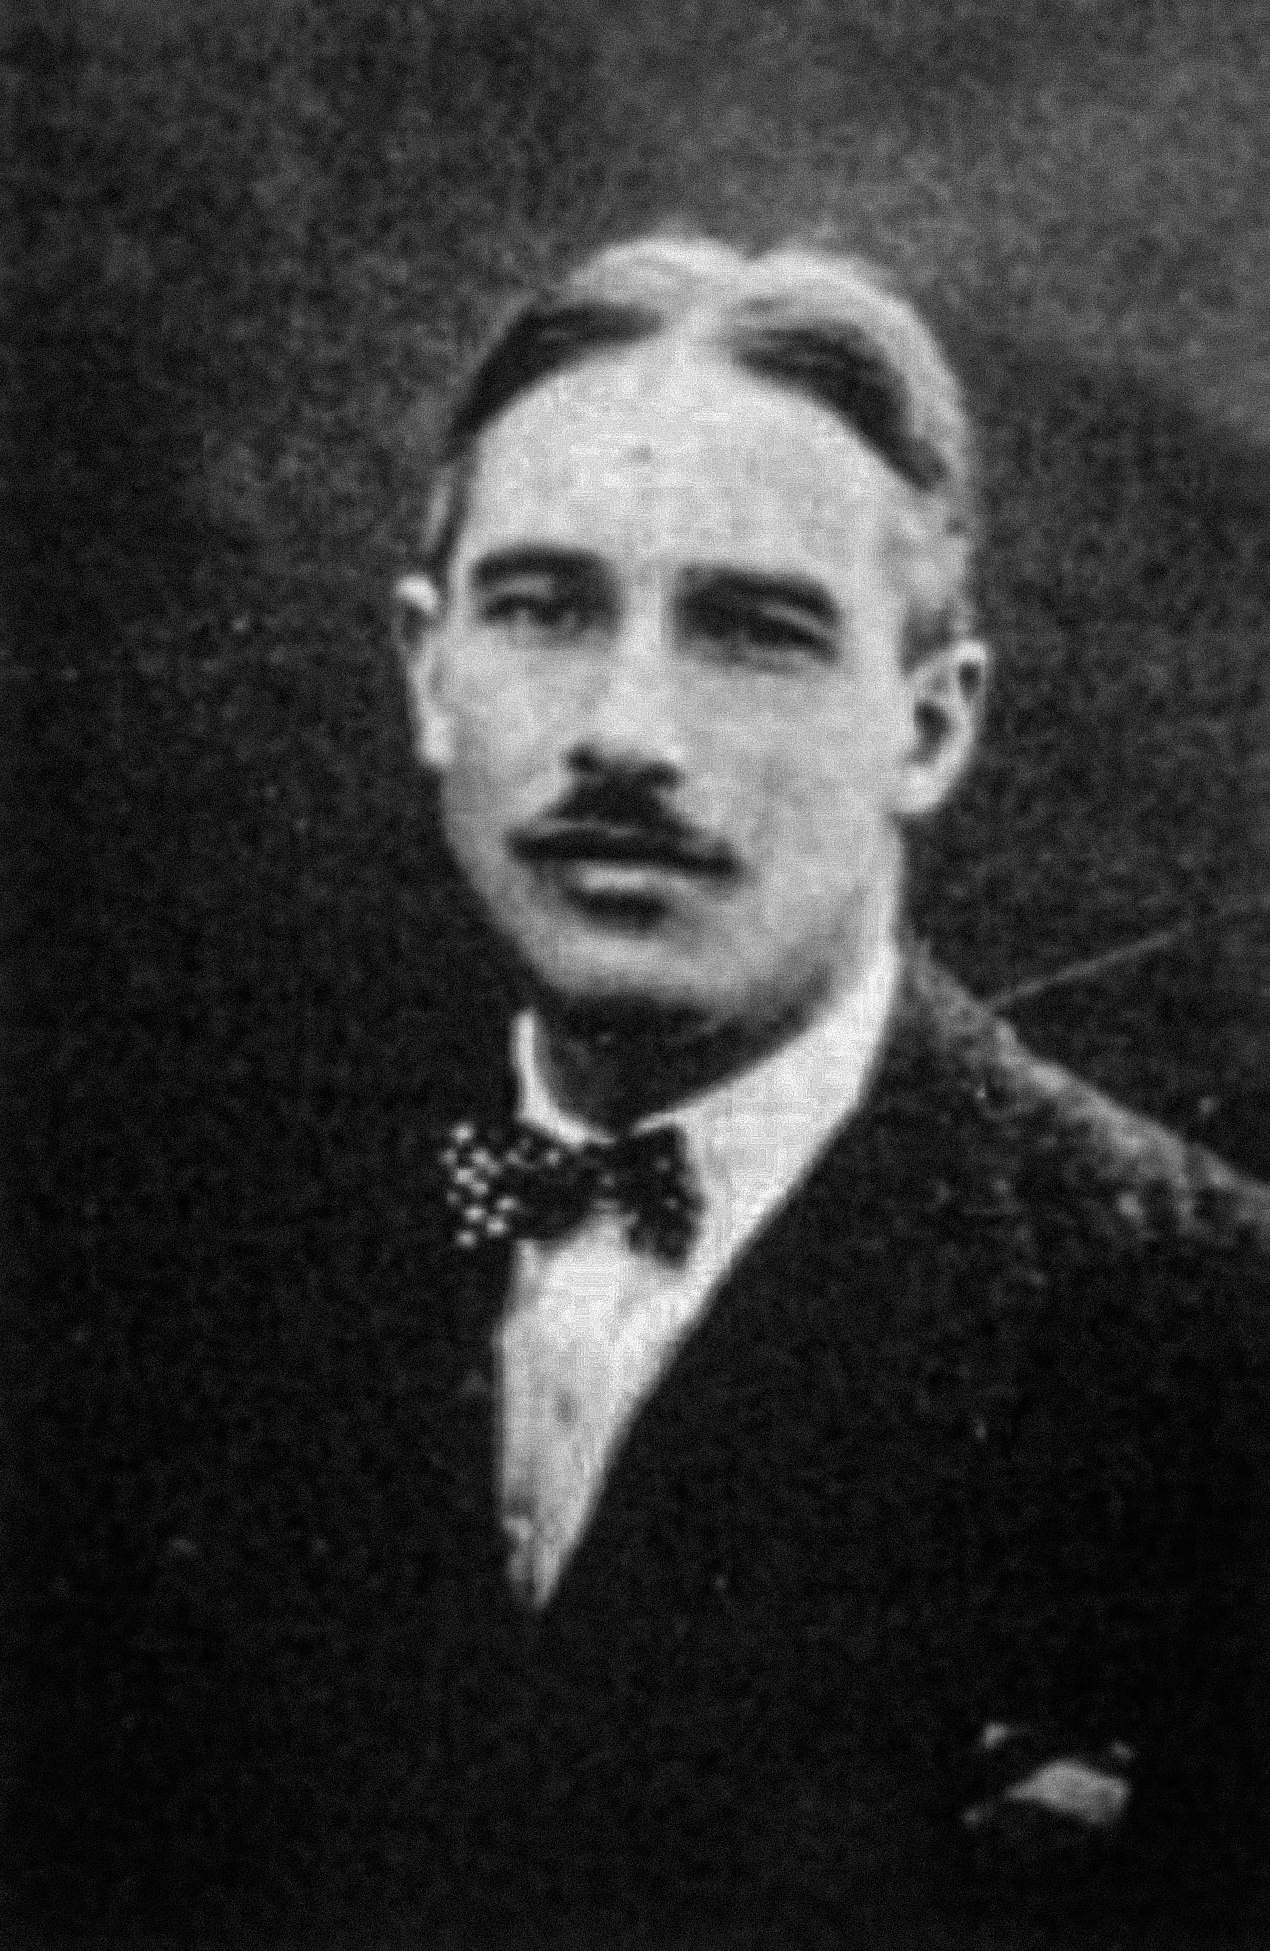 ಫ್ರಾಂಕೋಯಿಸ್ ಡಿ ಲಾಯ್ಸ್ (1892-1935) ಬಹುಶಃ ವೆನೆಜುವೆಲಾ ದಂಡಯಾತ್ರೆ 1917 ರ ಮೊದಲು